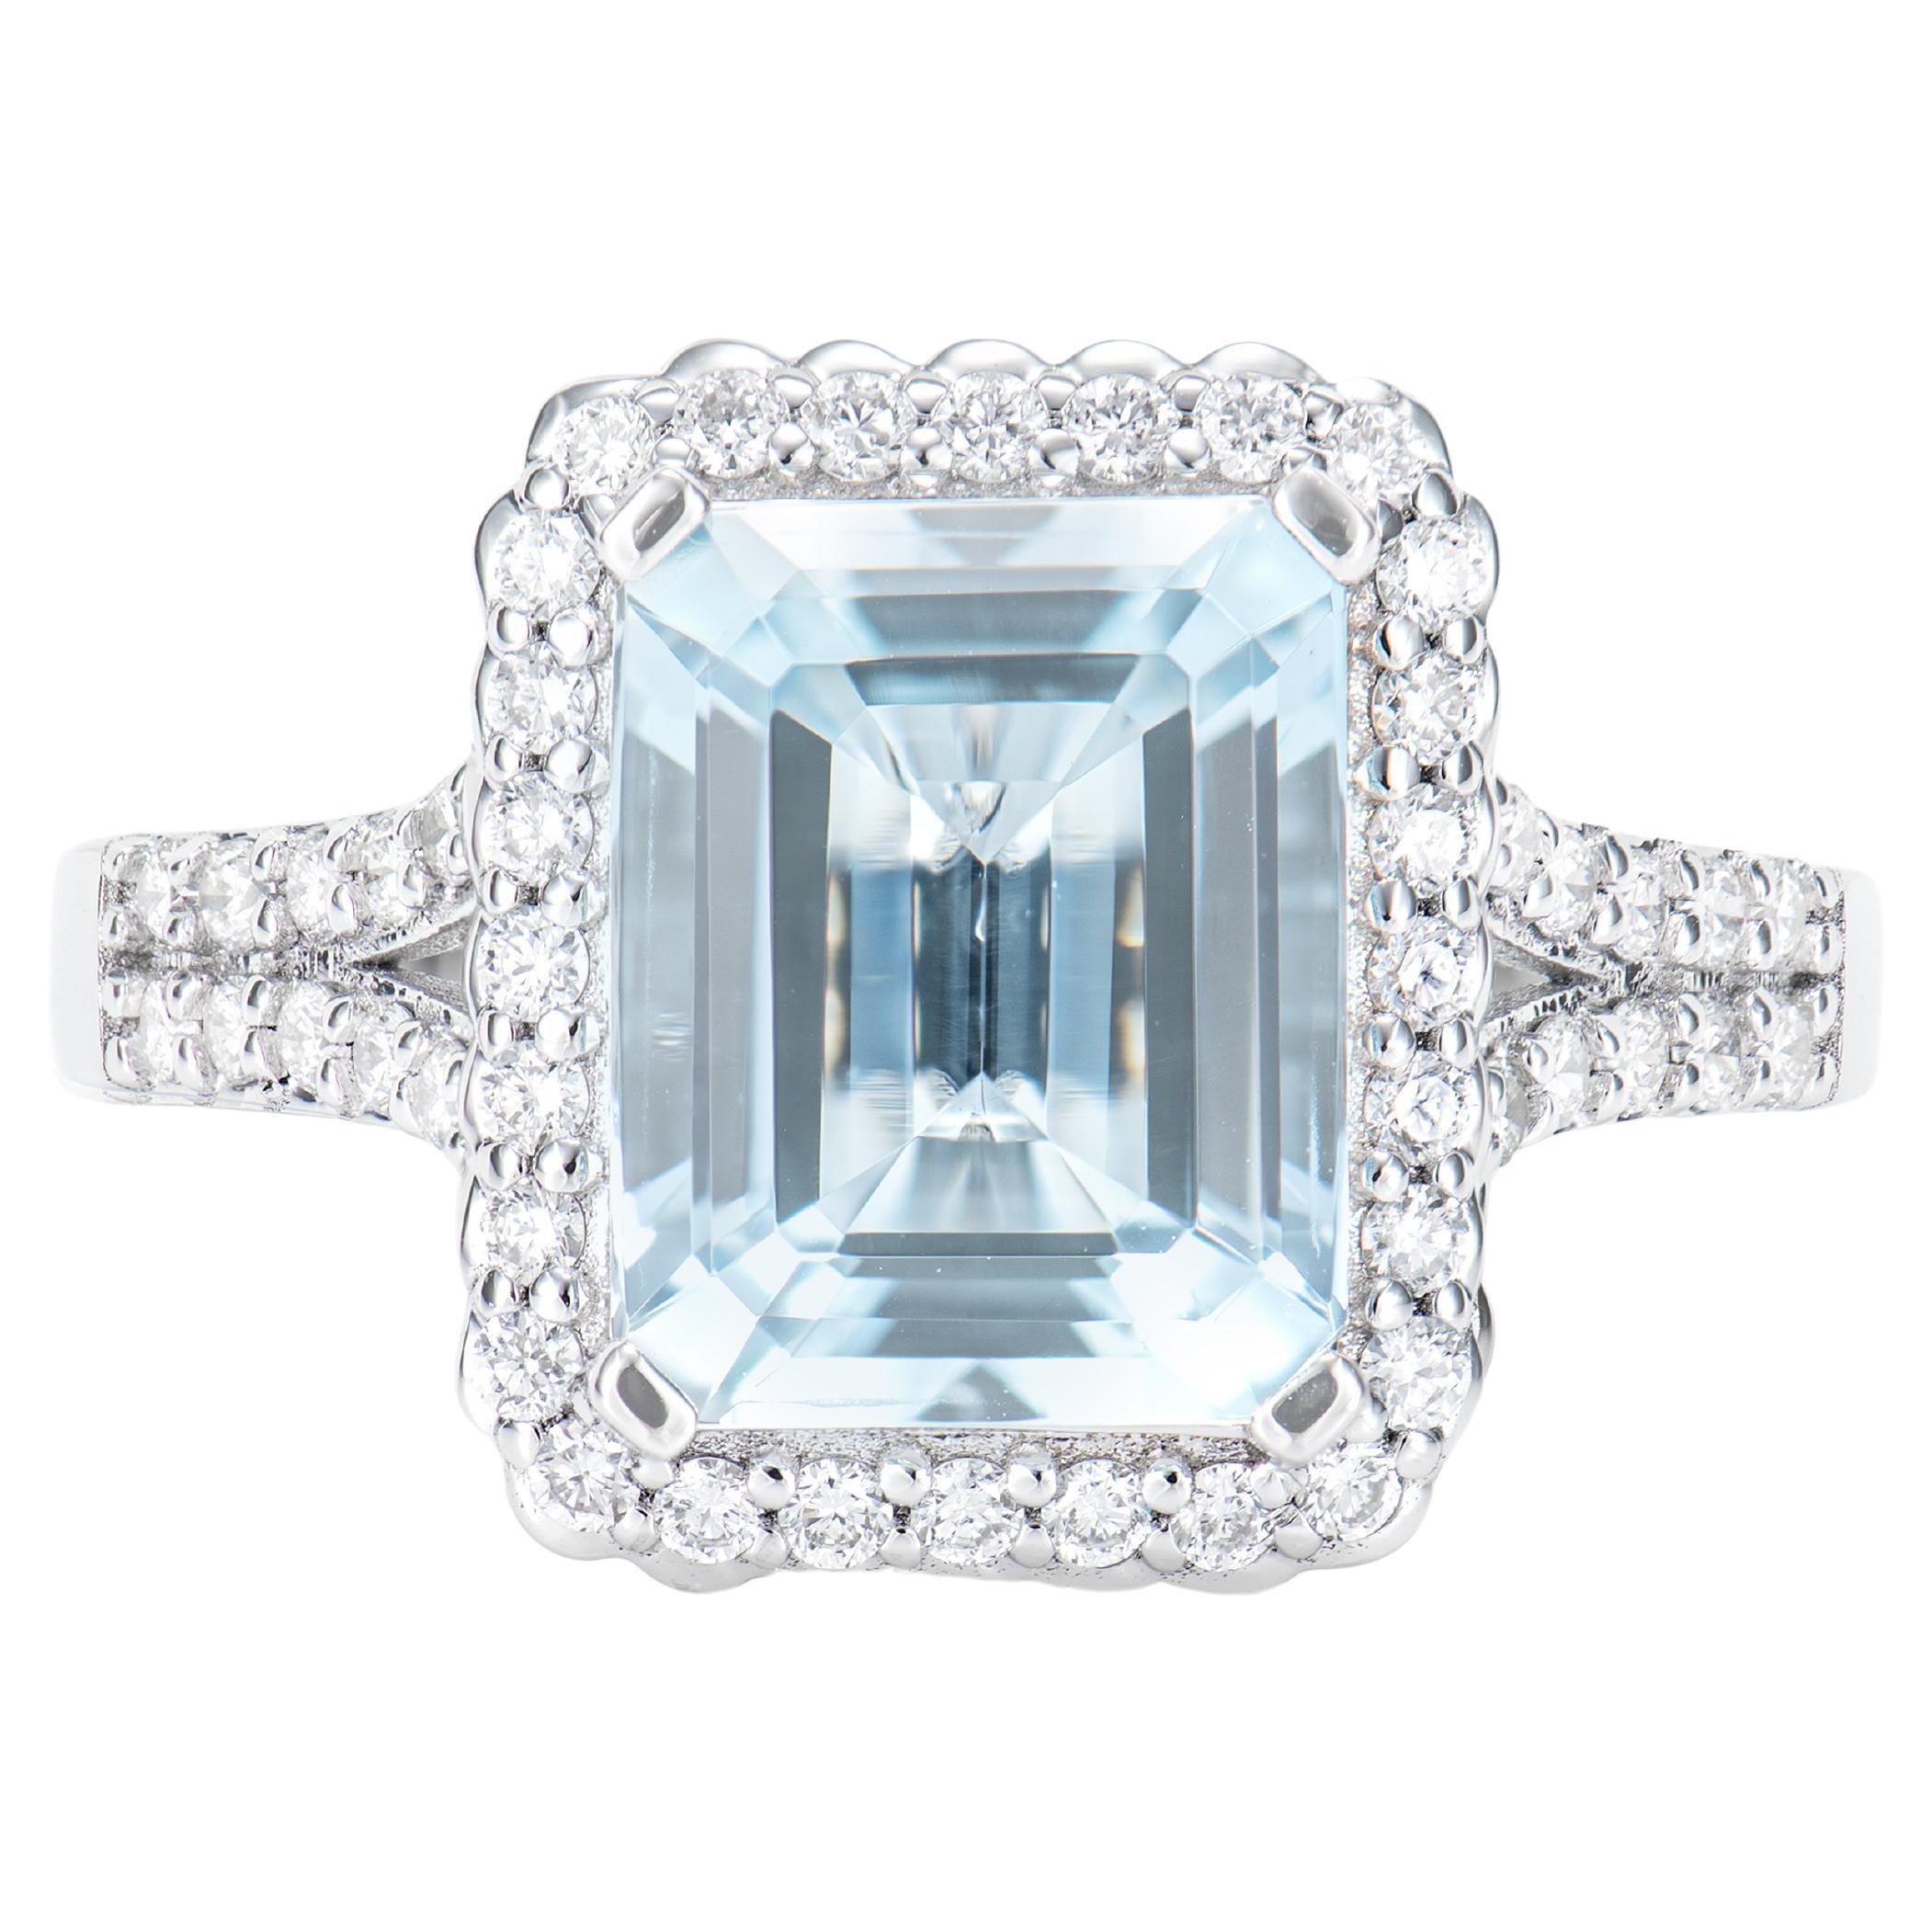 2.66 Carat Aquamarine Elegant Ring in 18 Karat White Gold with White Diamond